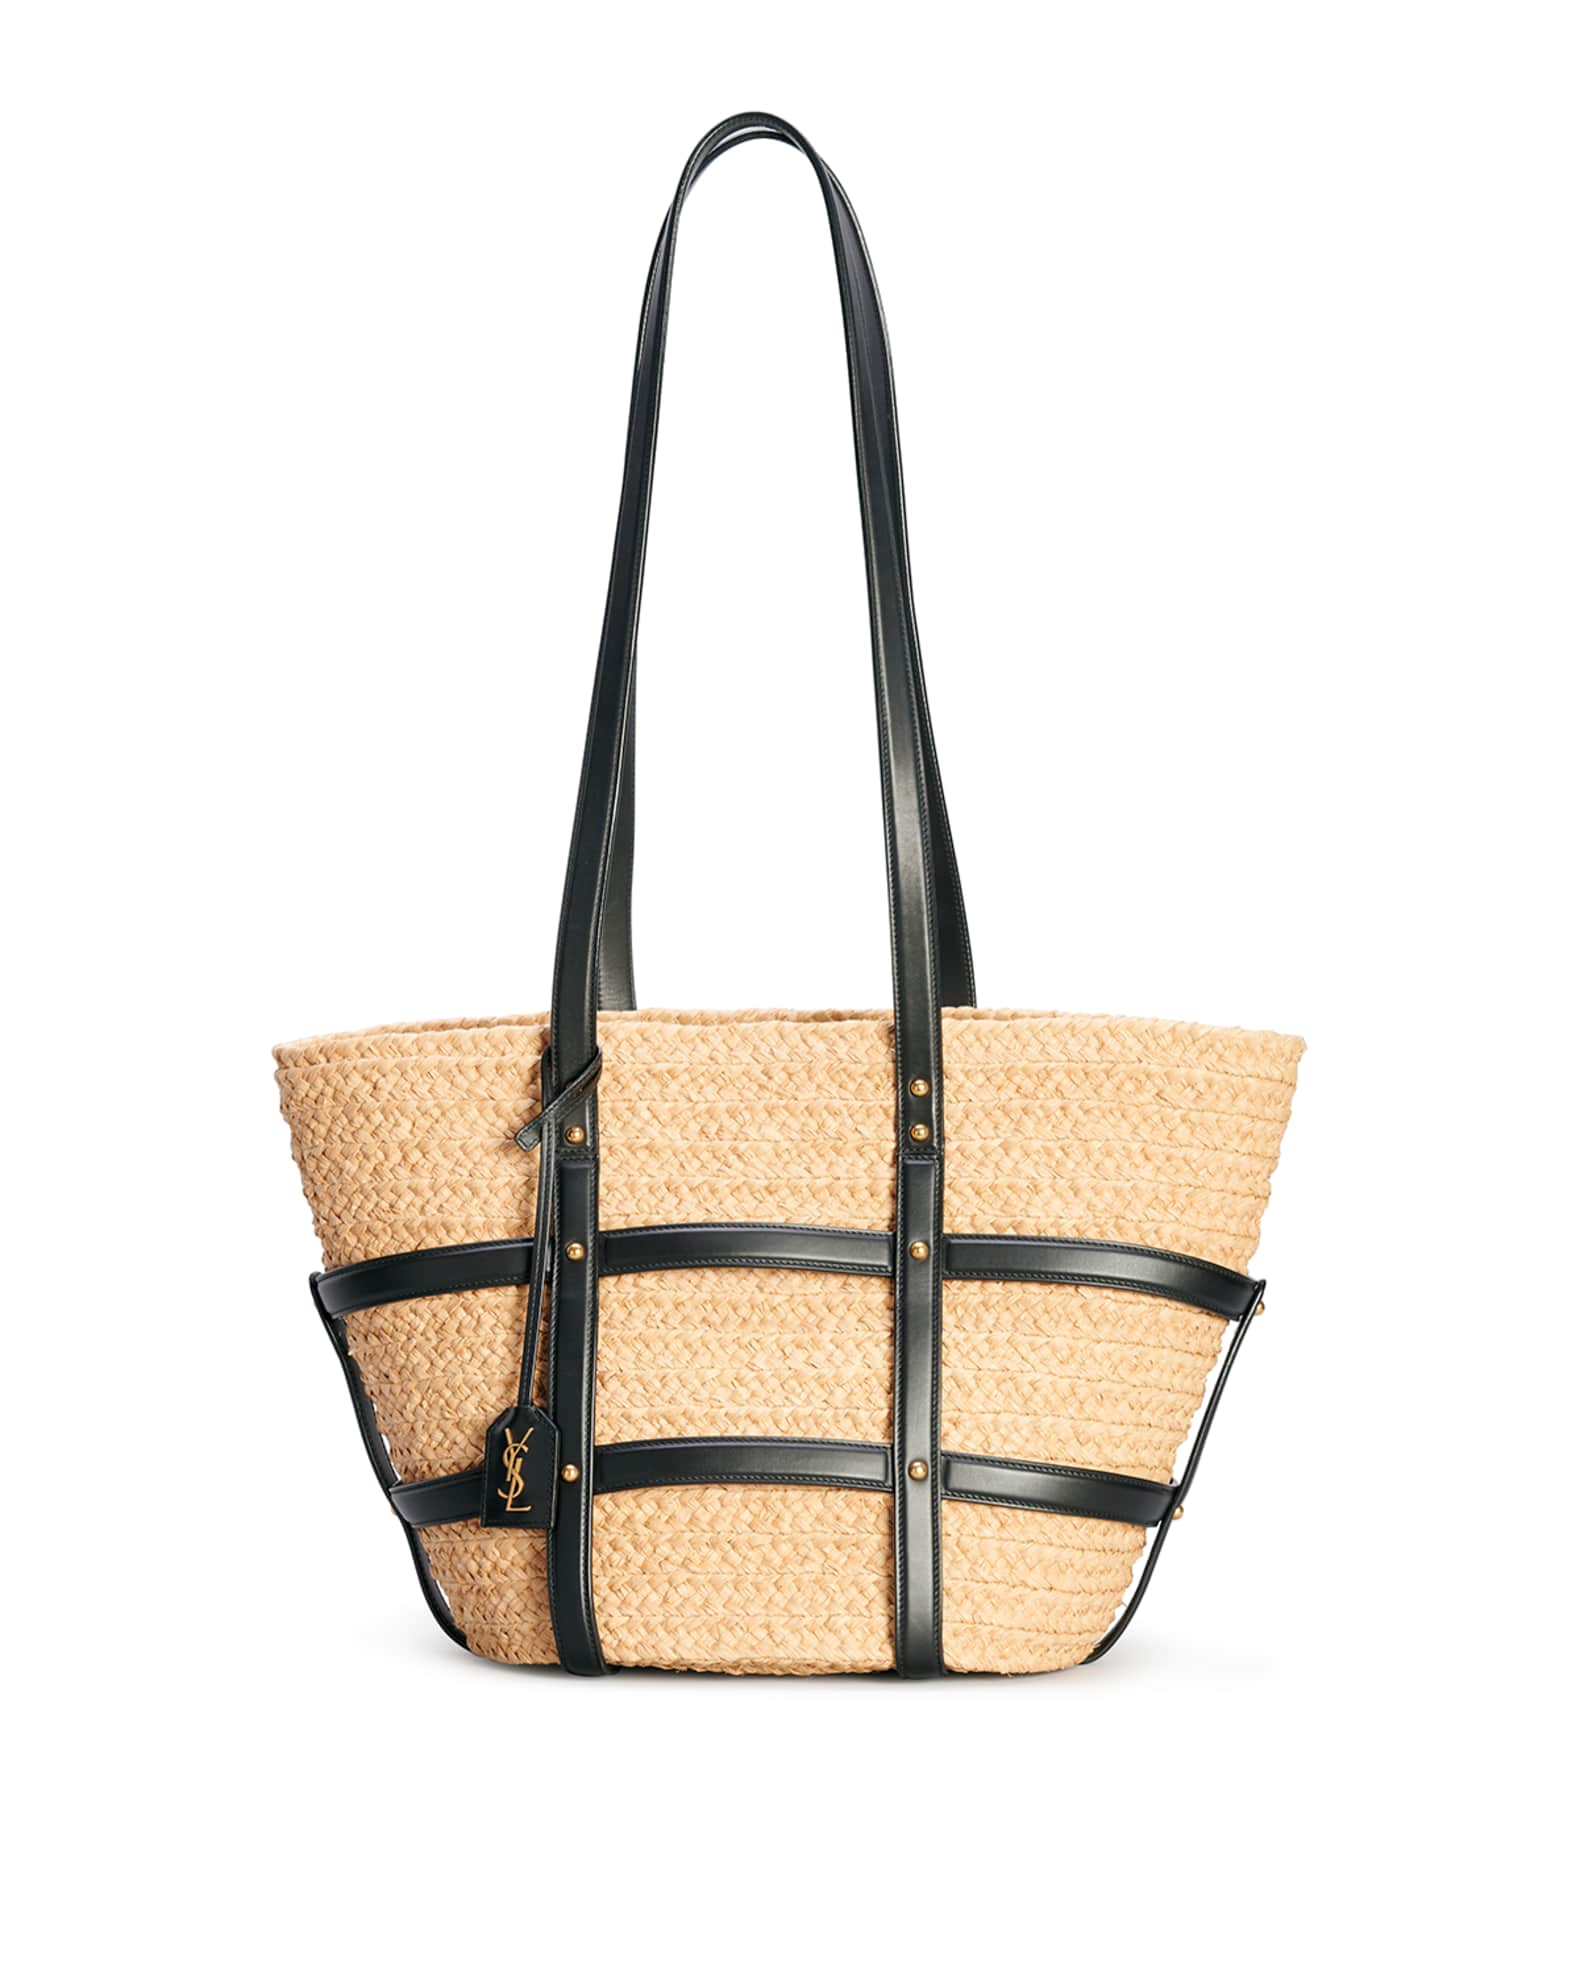 Cage Carryalls : Louis Vuitton Concept purse